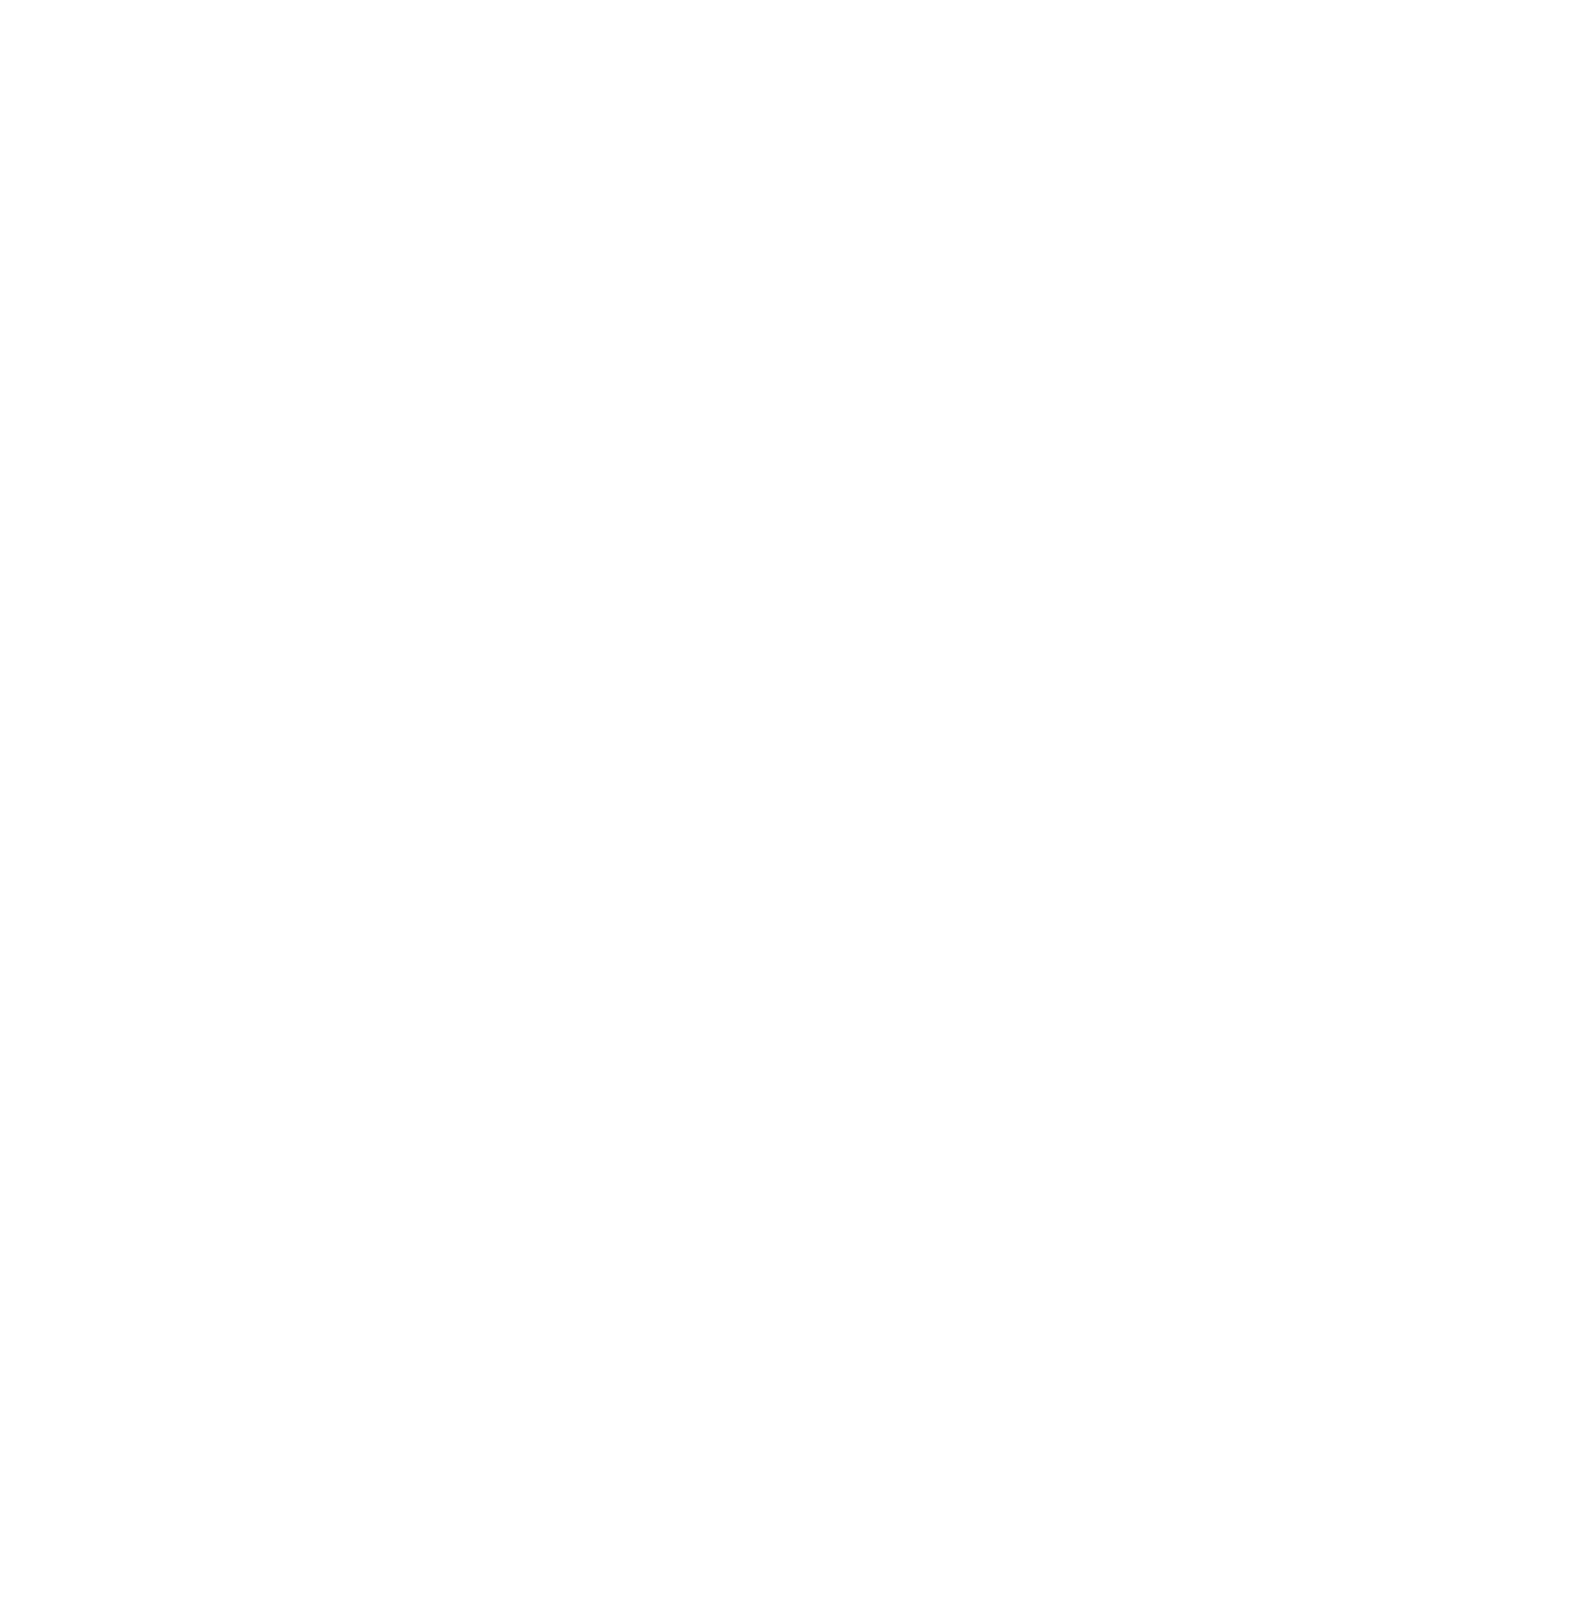 Kellogg's logo pour fonds sombres (PNG transparent)